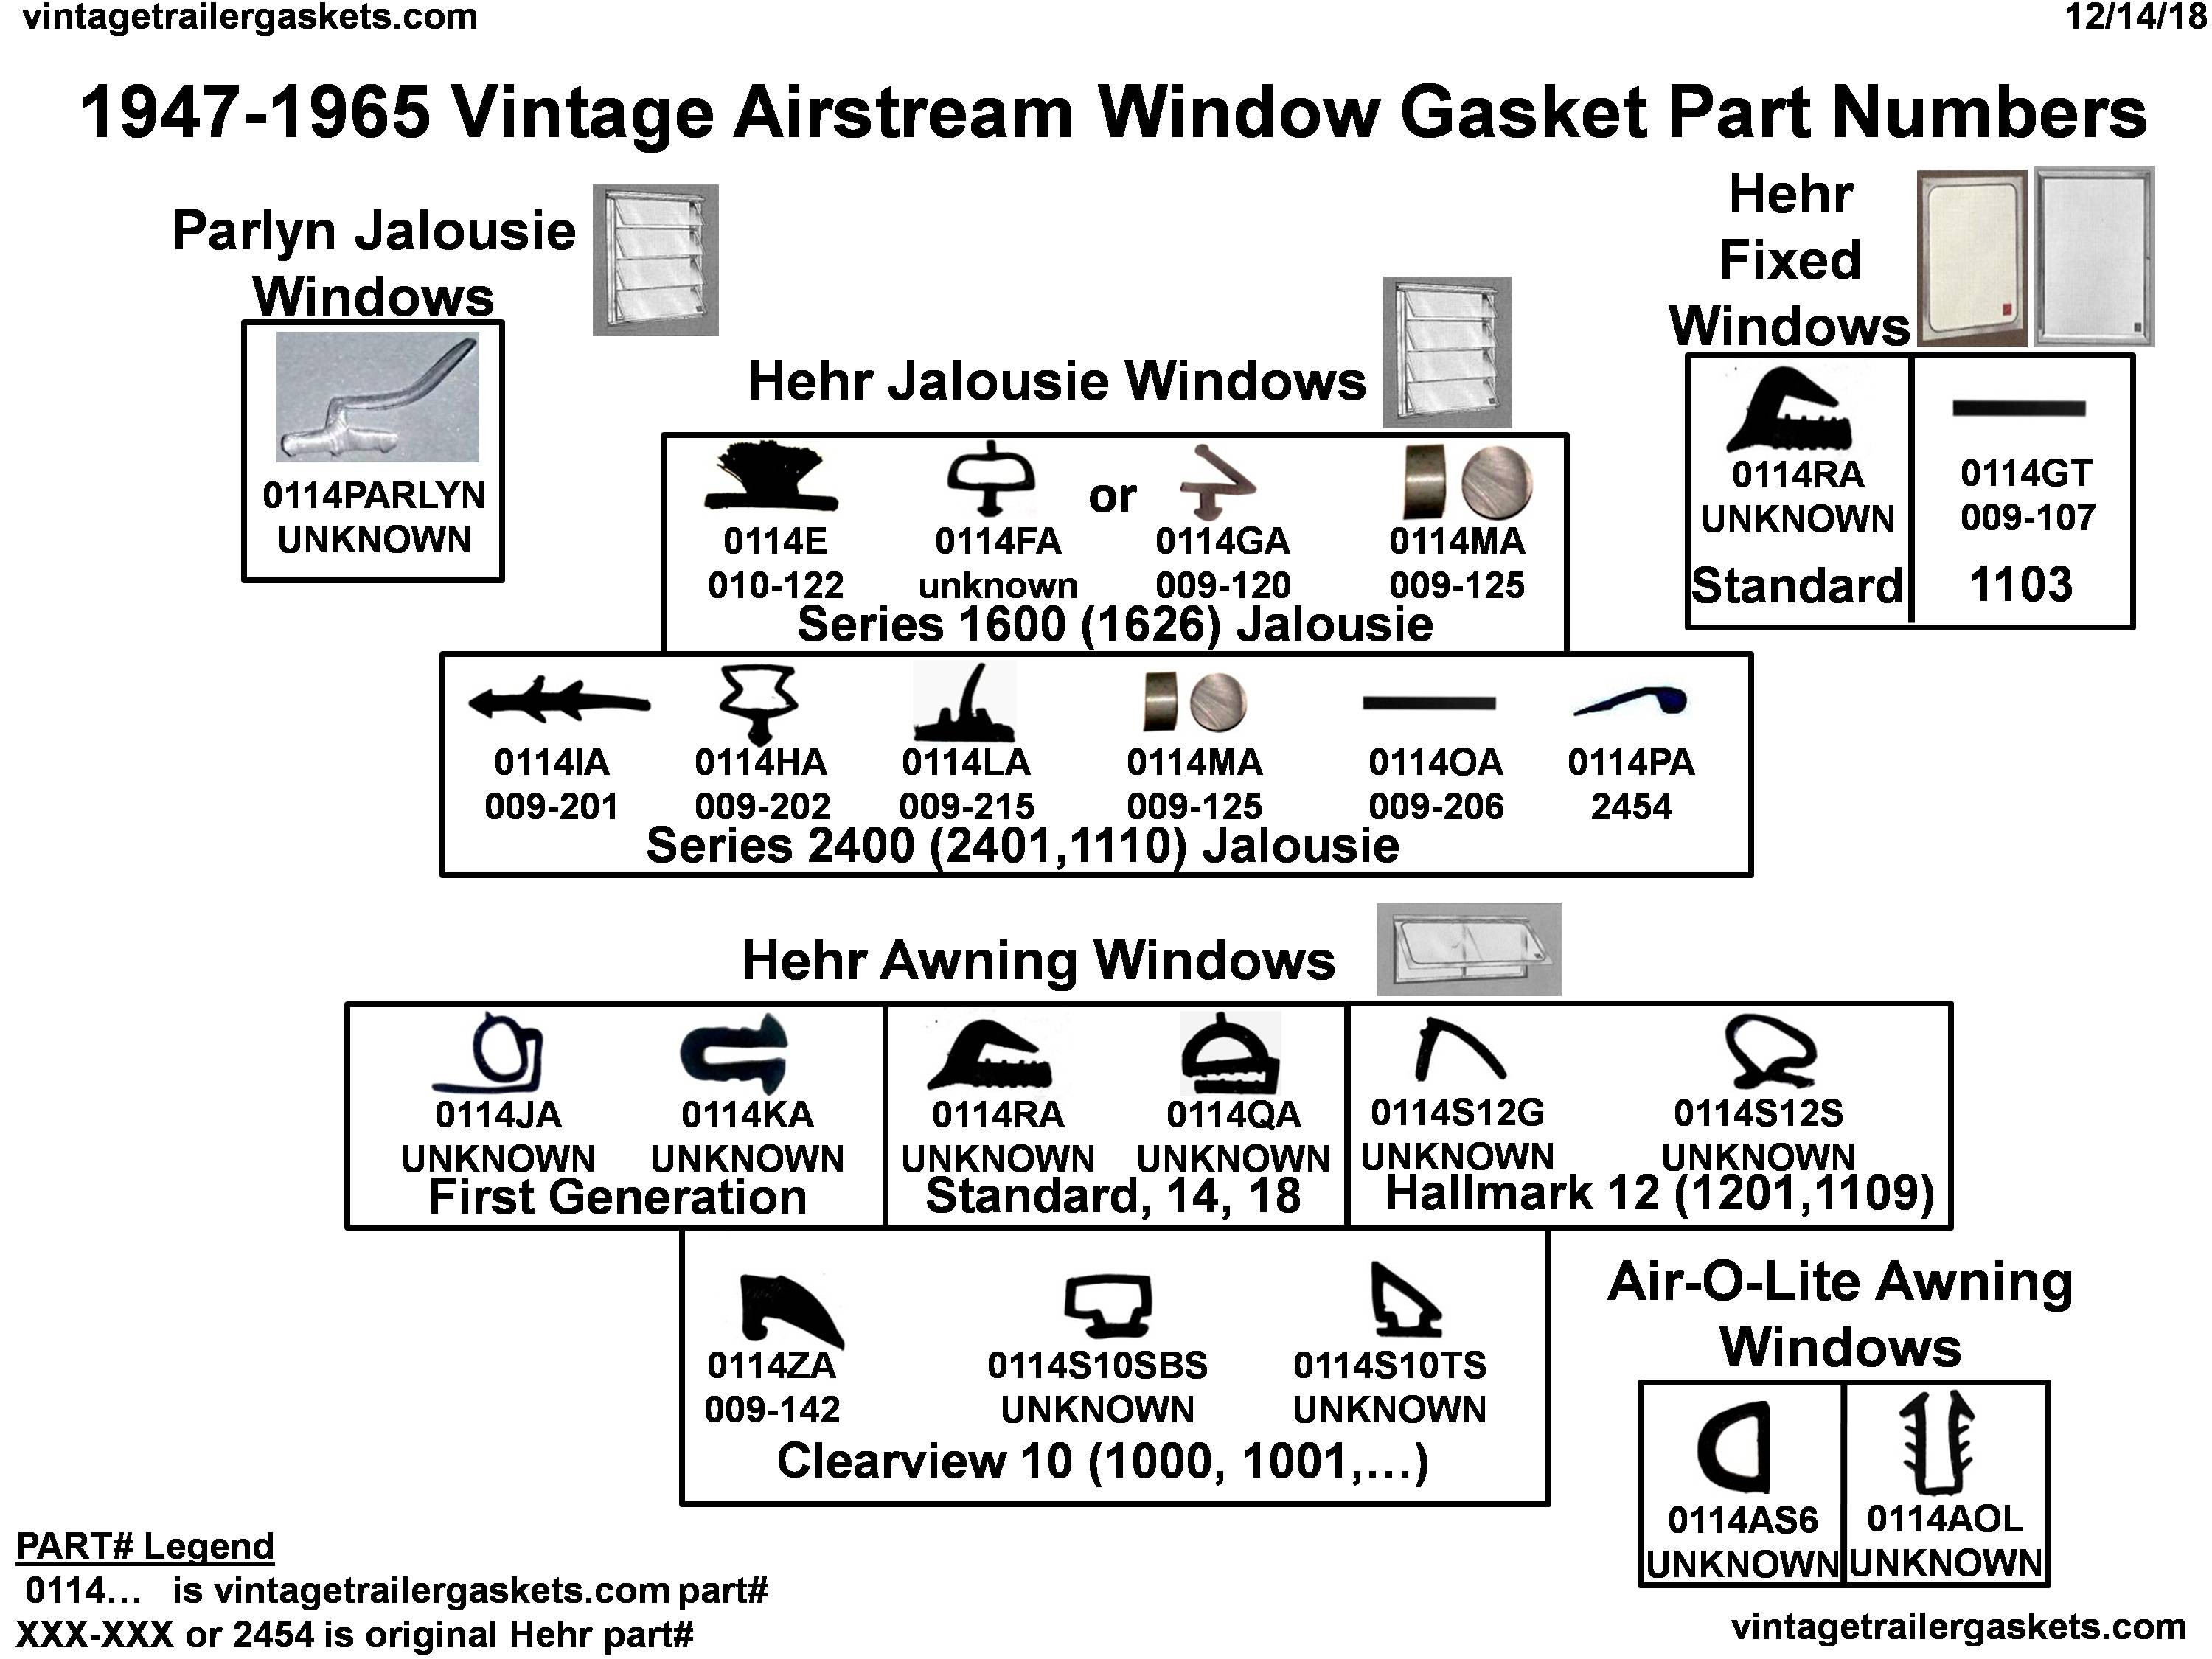 1947 to 1965 Vintage Airstream Window Gasket Part Numbers